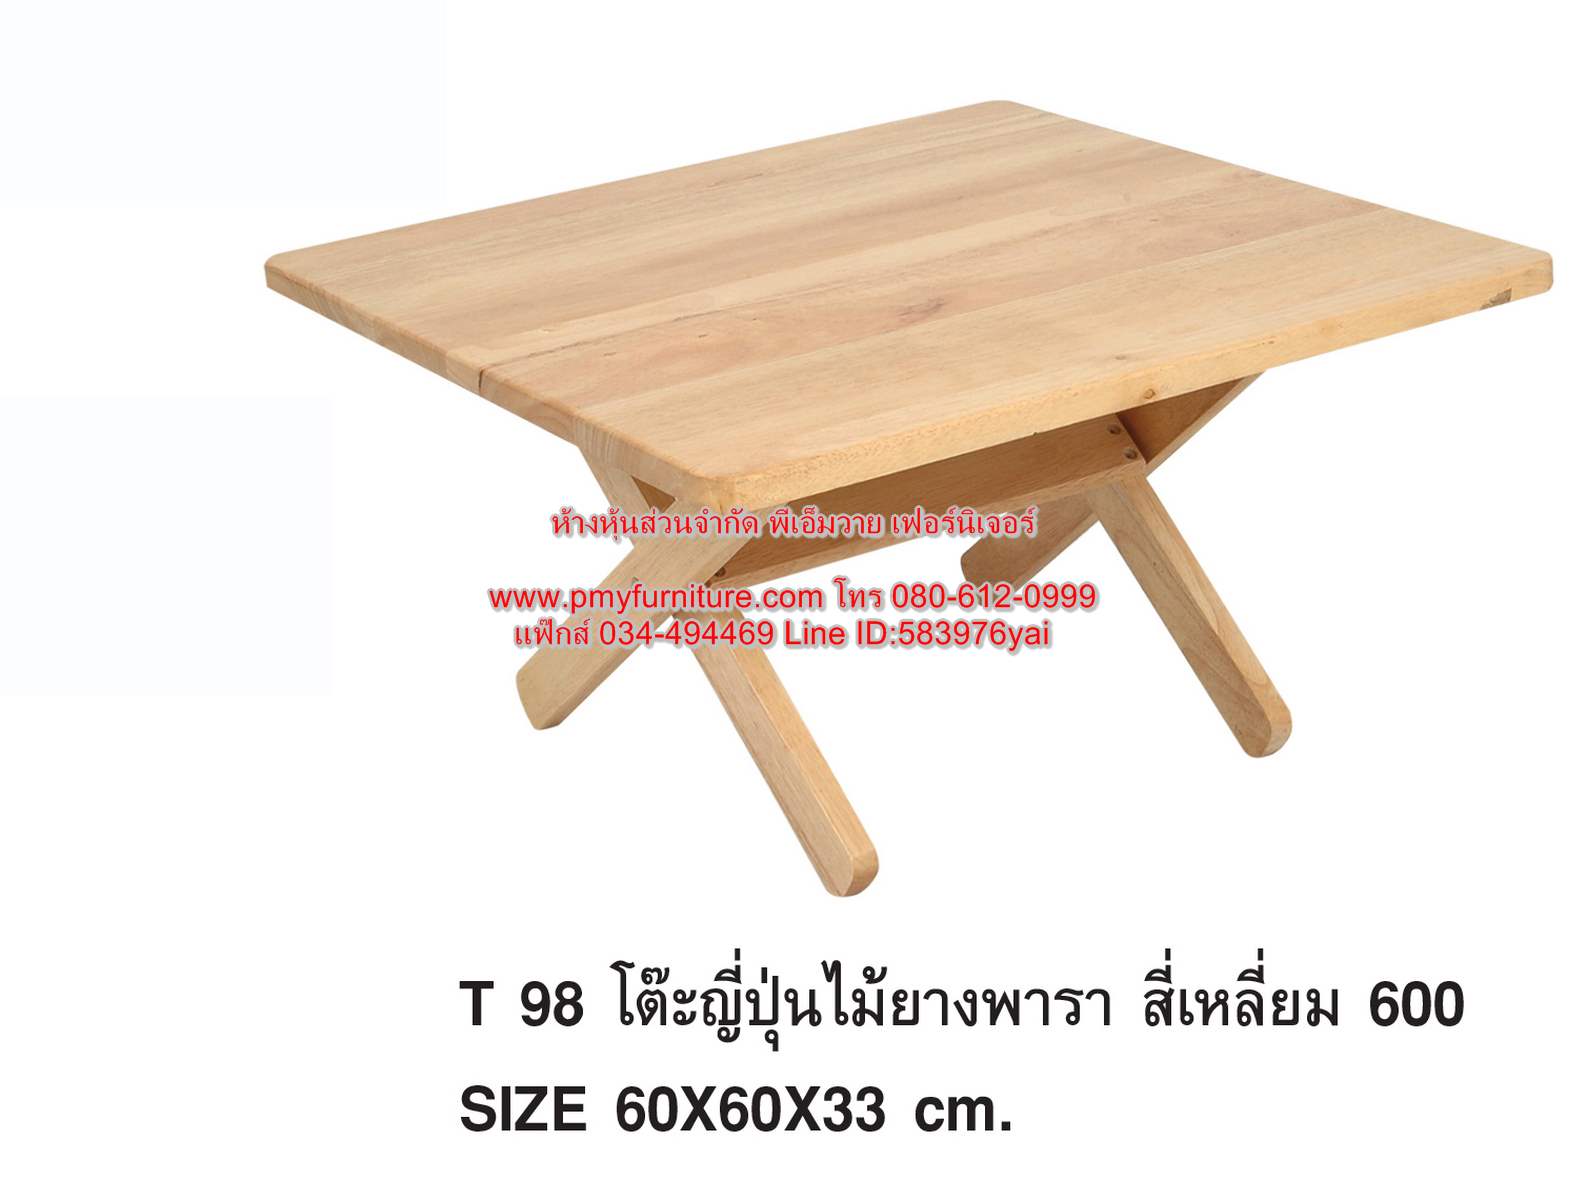 PMY24-4 โต๊ะญี่ปุ่นเหลี่ยม ไม้ยางพารา ขนาด 60x60x33 ซม.